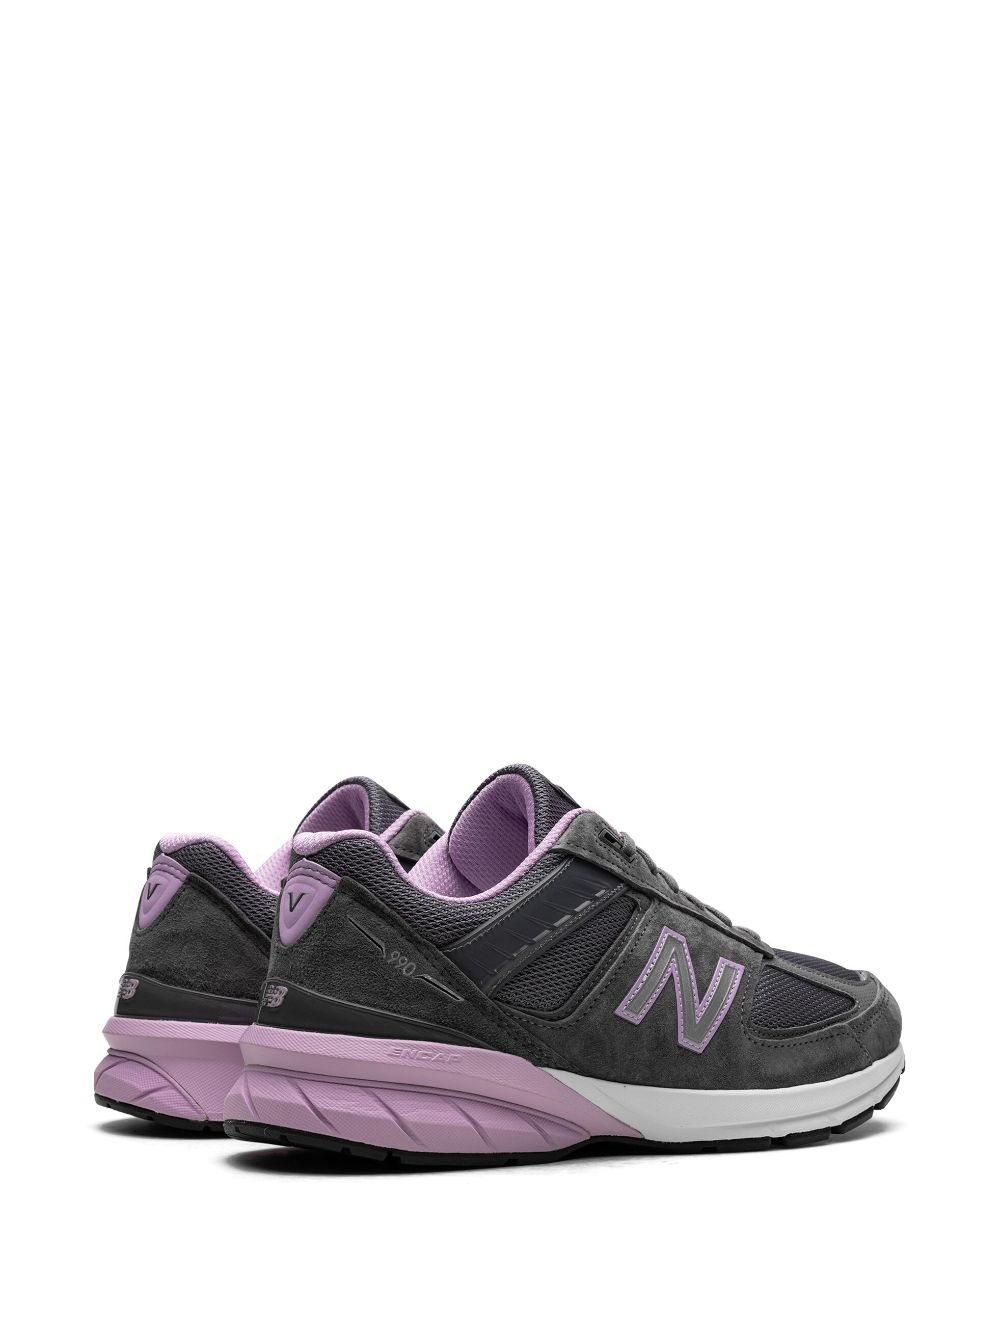 990v5 "MiUSA Lead Dark Violet Glow" sneakers - 3